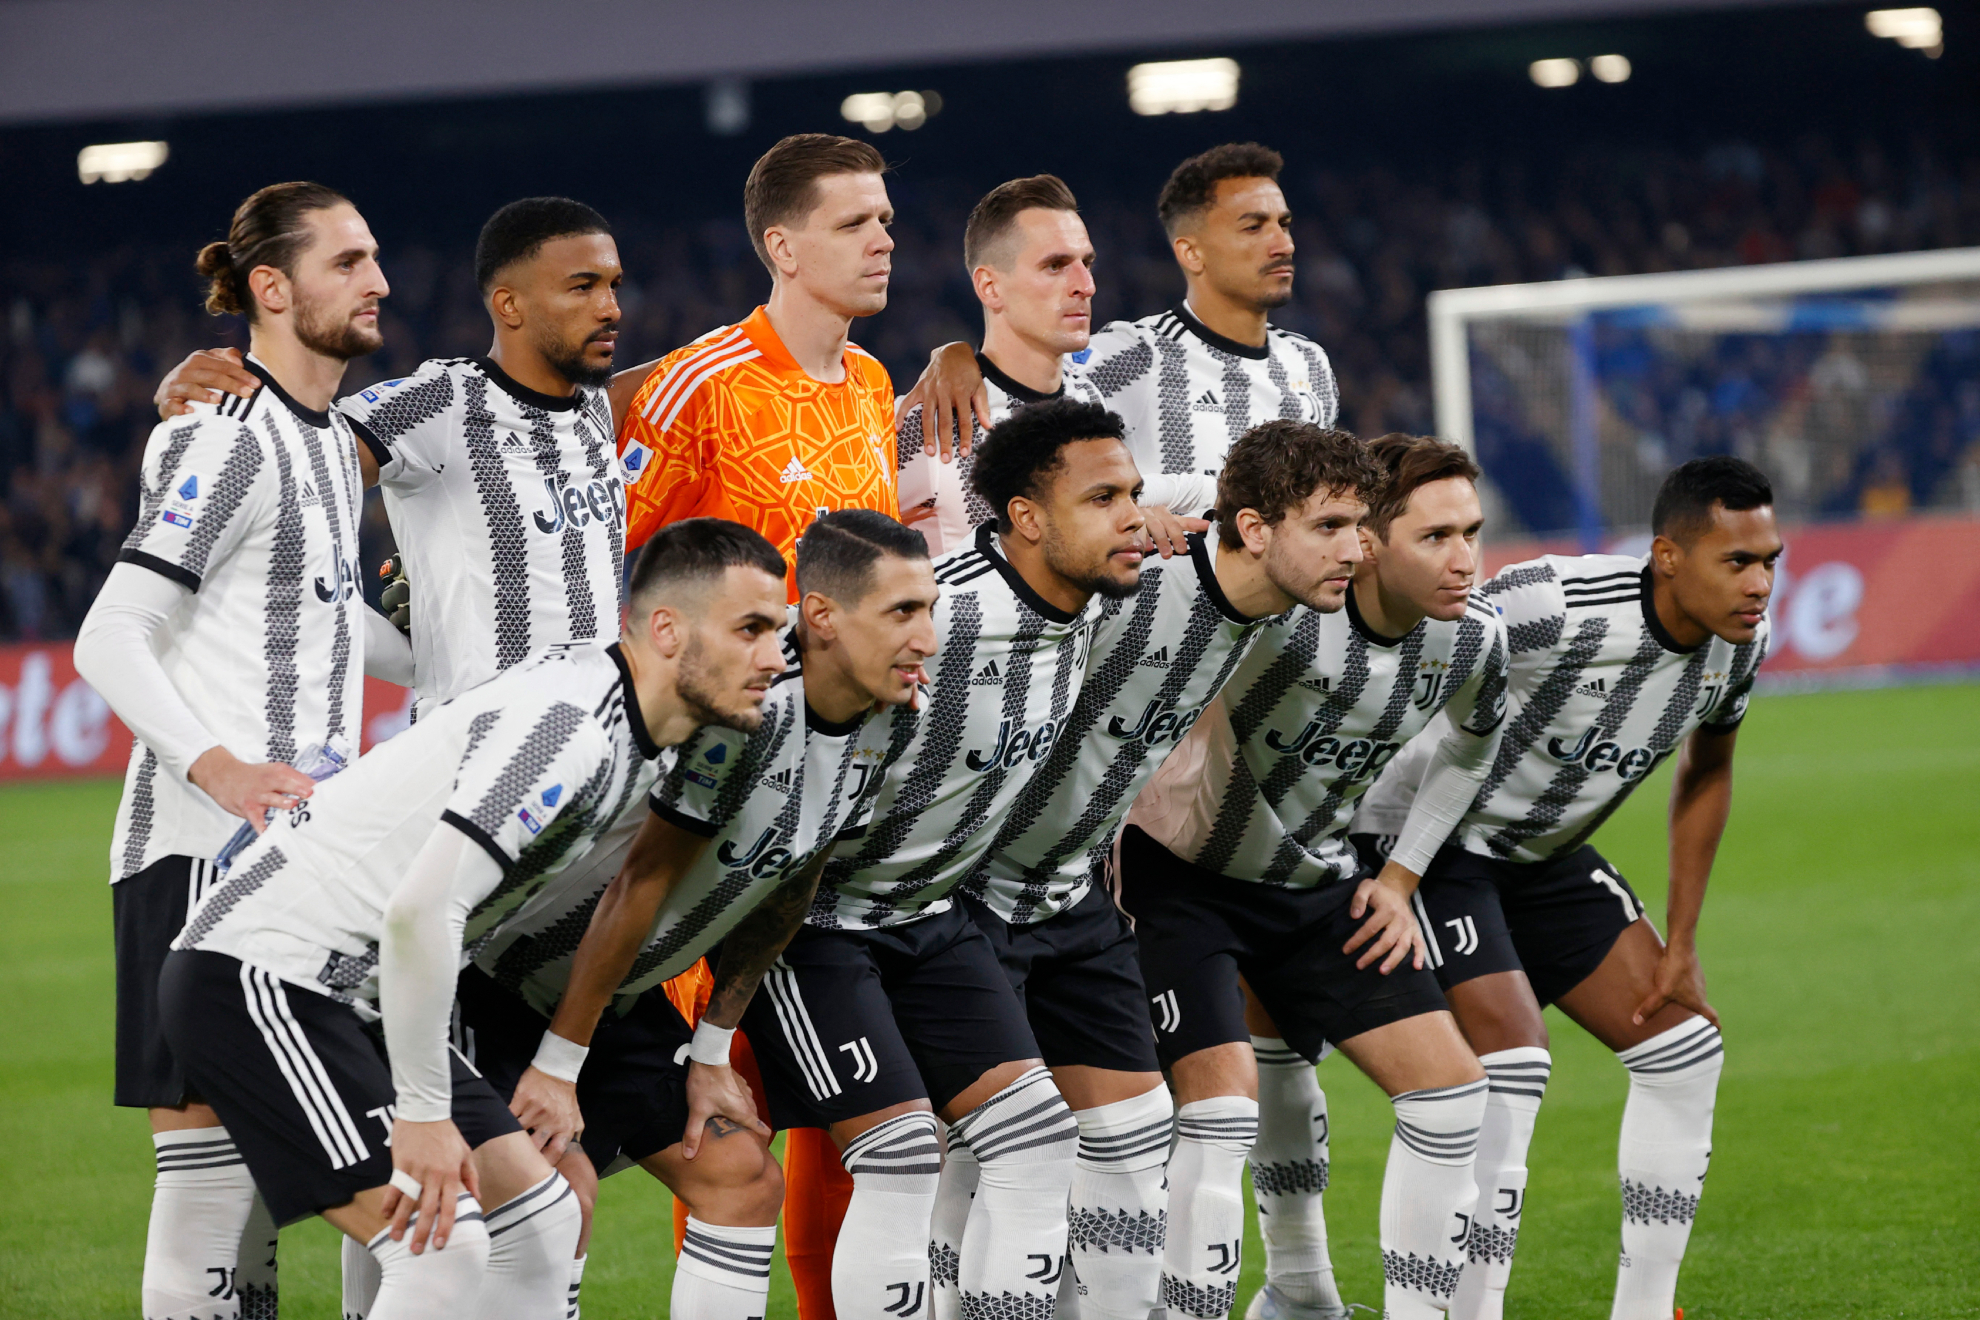 Juventus cometió un delito grave, reiterado y prolongado